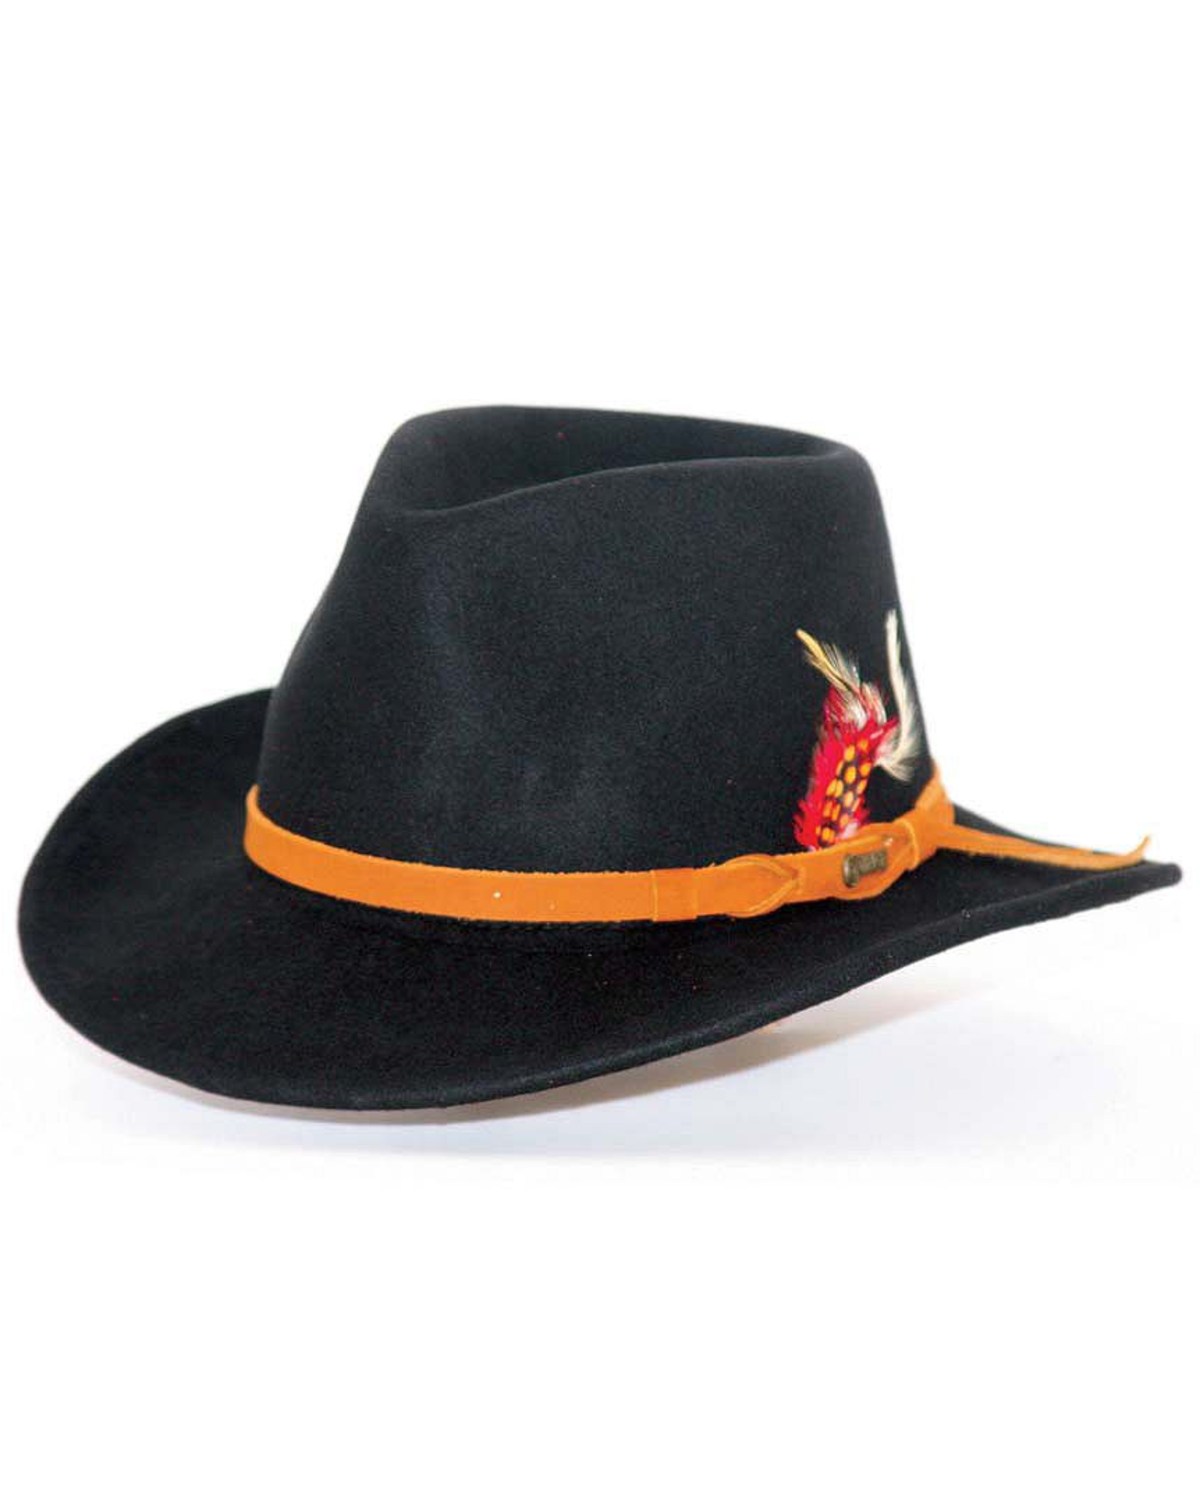 Outback Unisex Randwick Tassy Crusher Hat